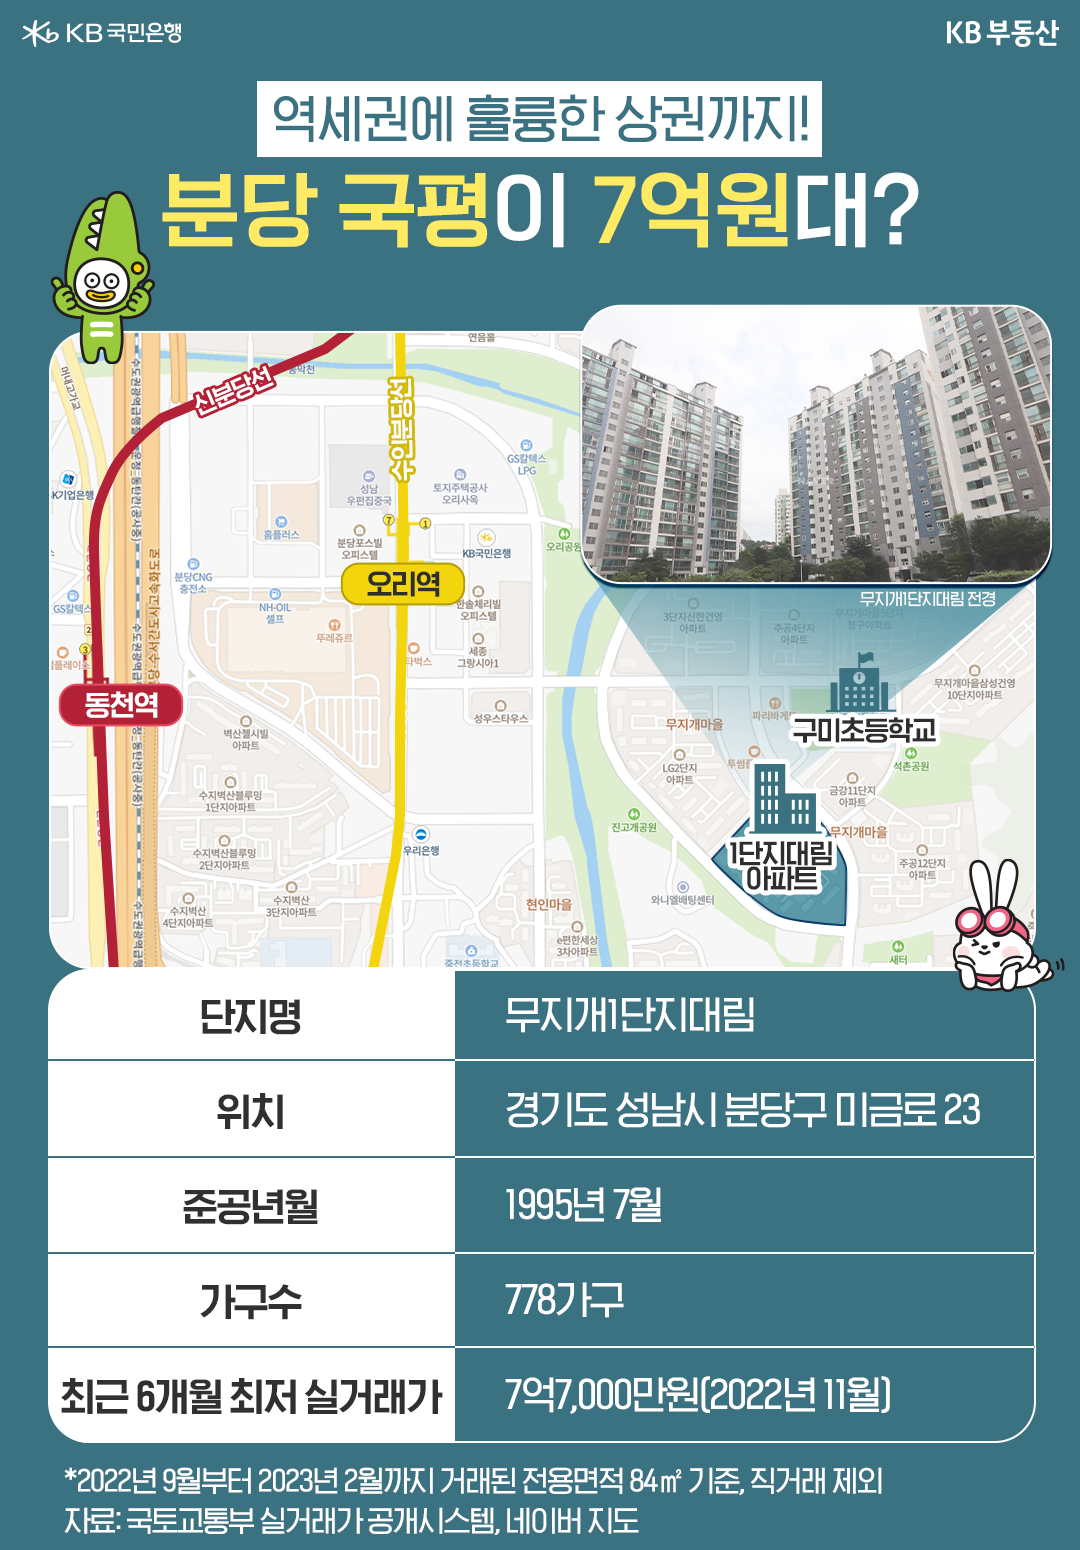 '1995년 7월에 준공된 경기도 성남시 분당에서 가장 저렴하게 거래된 아파트'는 '무지개1단지대림'이다. 이 단지의 전용면적 84㎡는 7억7,000만원에 거래.